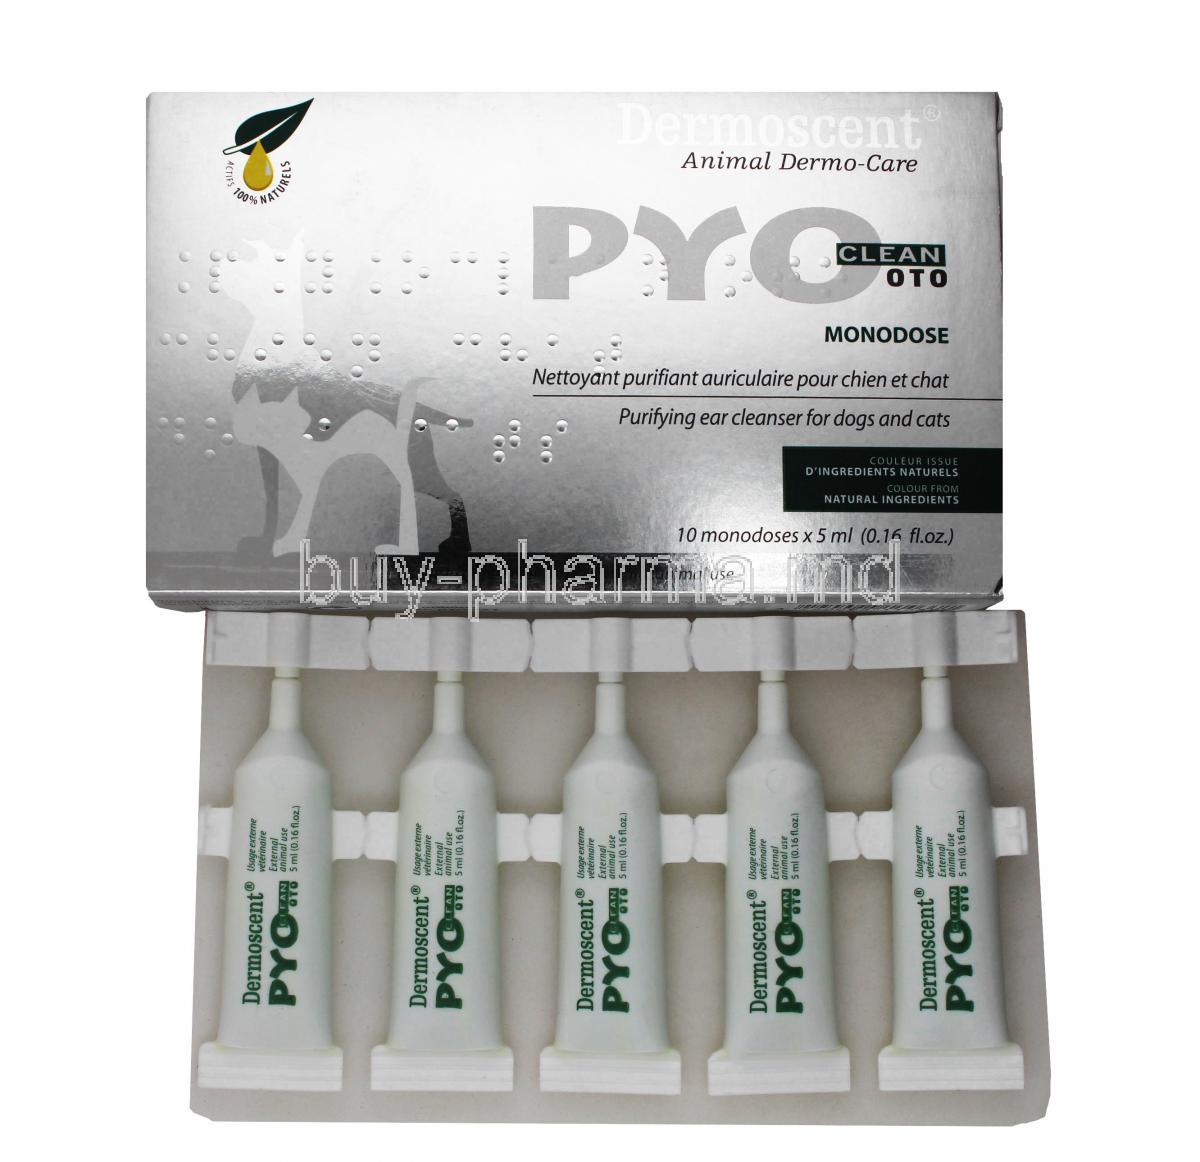 PYO Clean OTO, Pipette 5ml X 10 monodoses, Box and Pipette